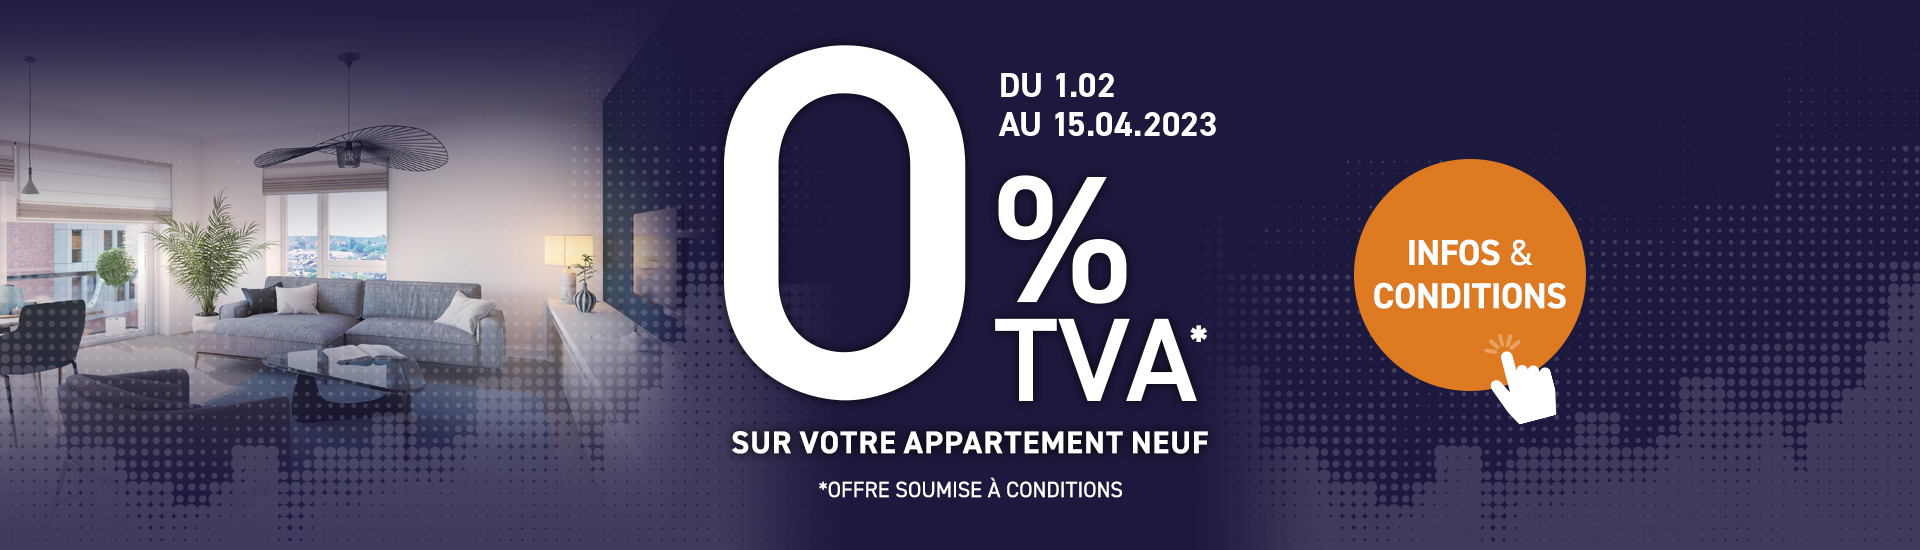 0% TVA pour votre appartement neuf